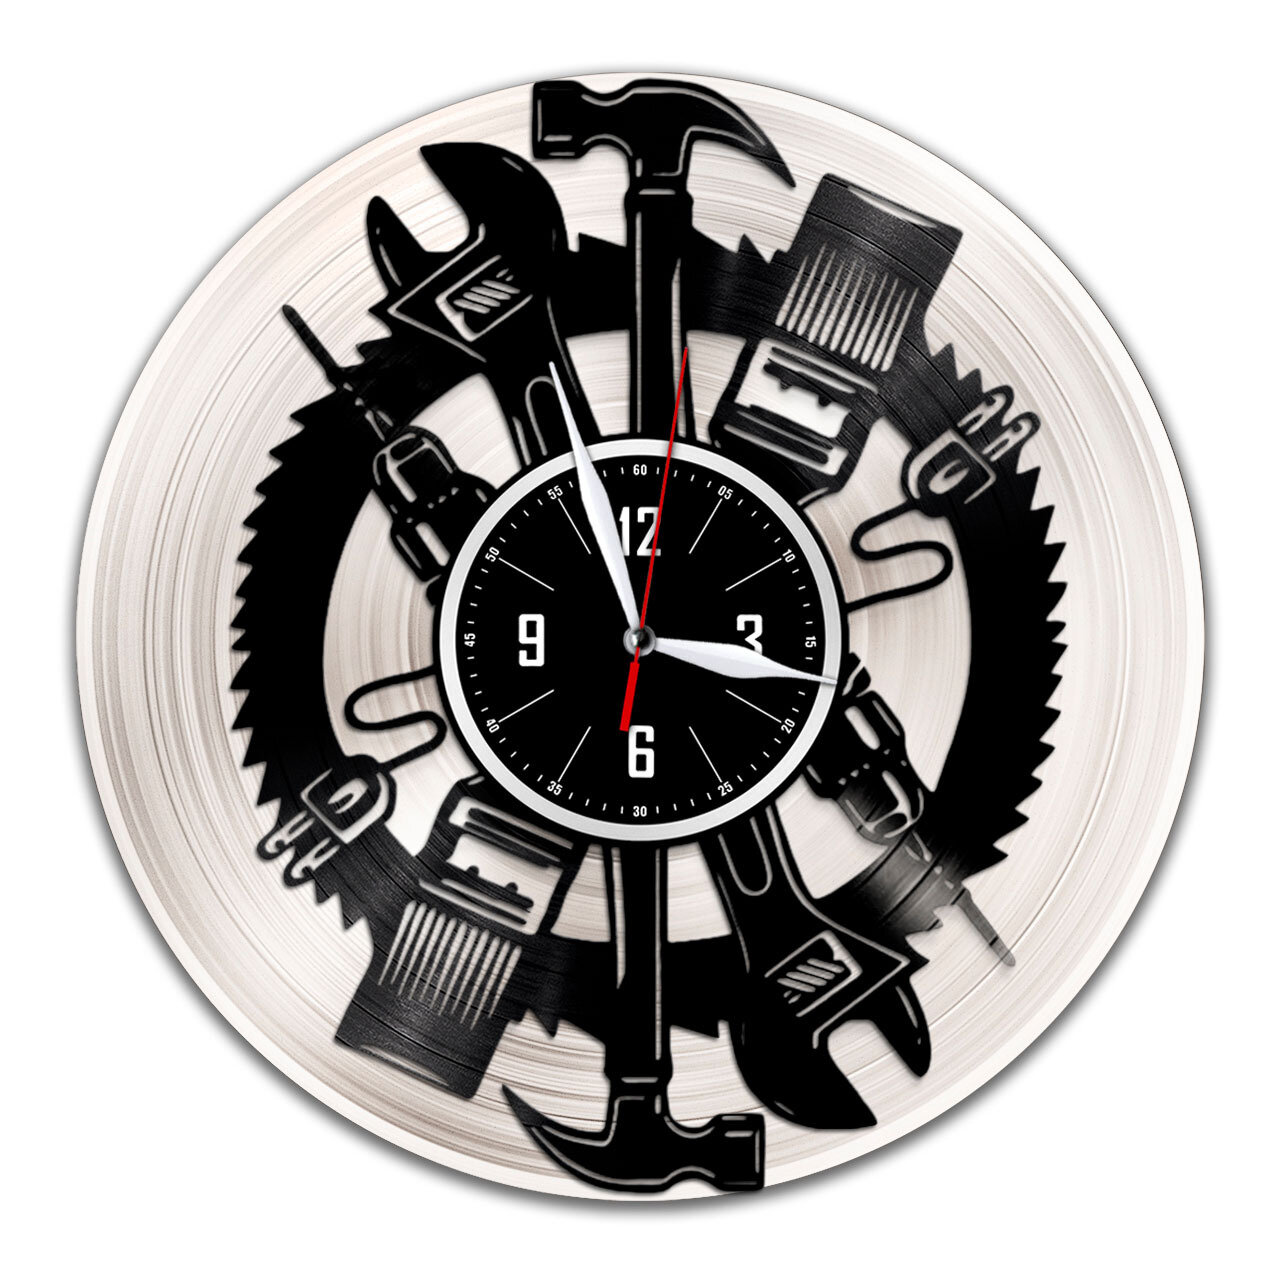 Автосервис - настенные часы из виниловой пластинки (с серебряной подложкой)